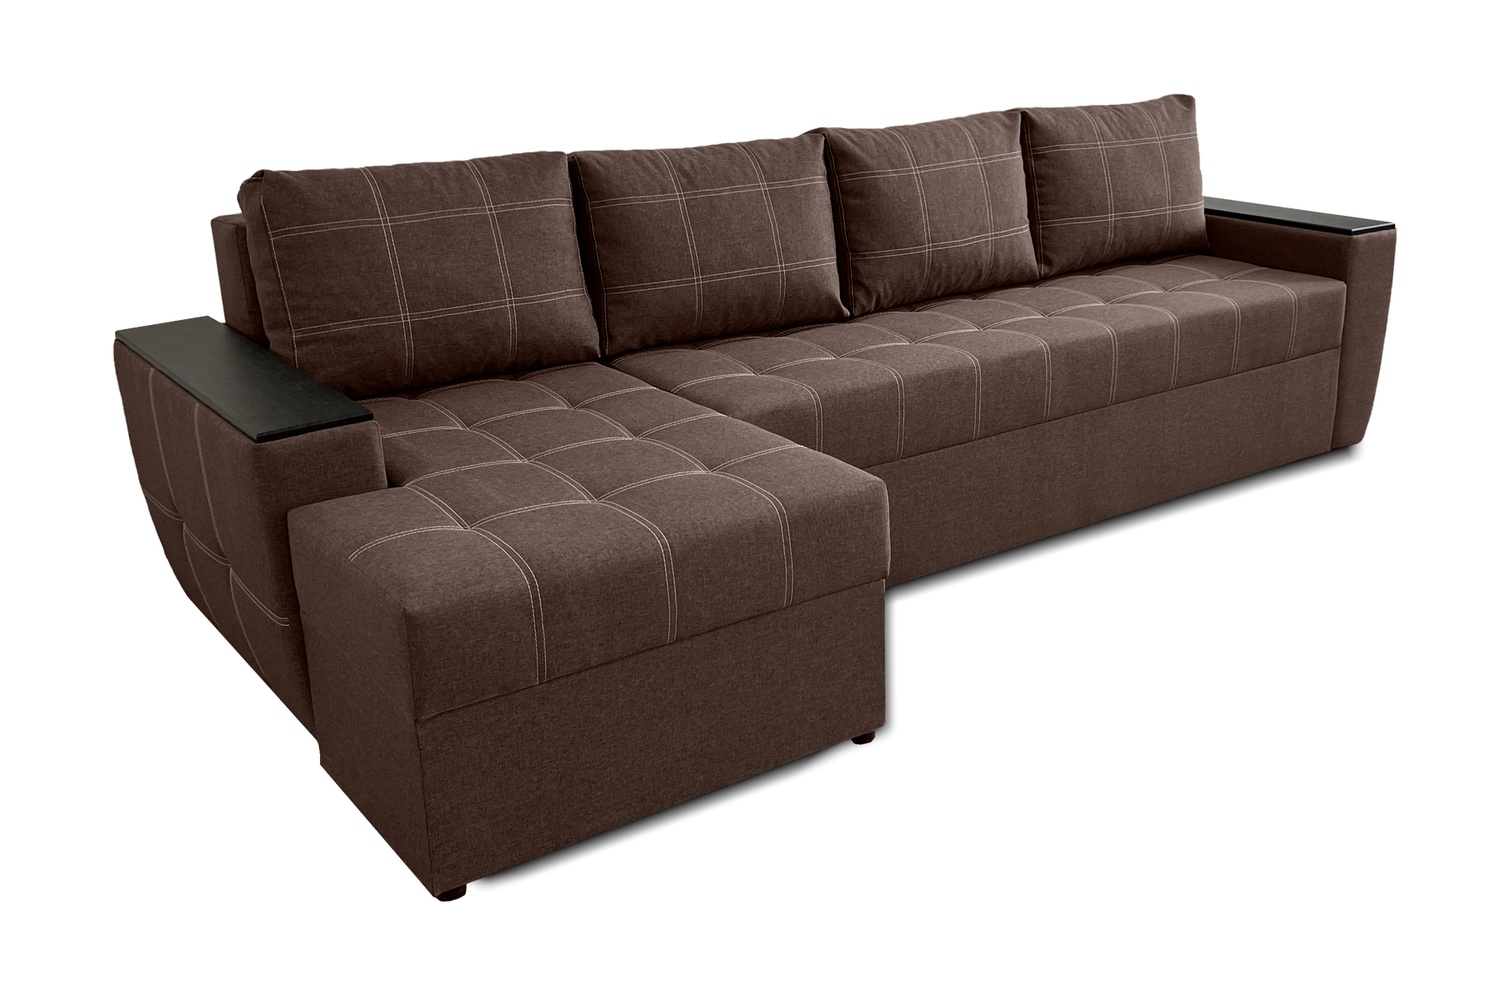 Кутовий диван Наполі Плюс (бежевий, 300х150 см) IMI knplp-sn-21 фото